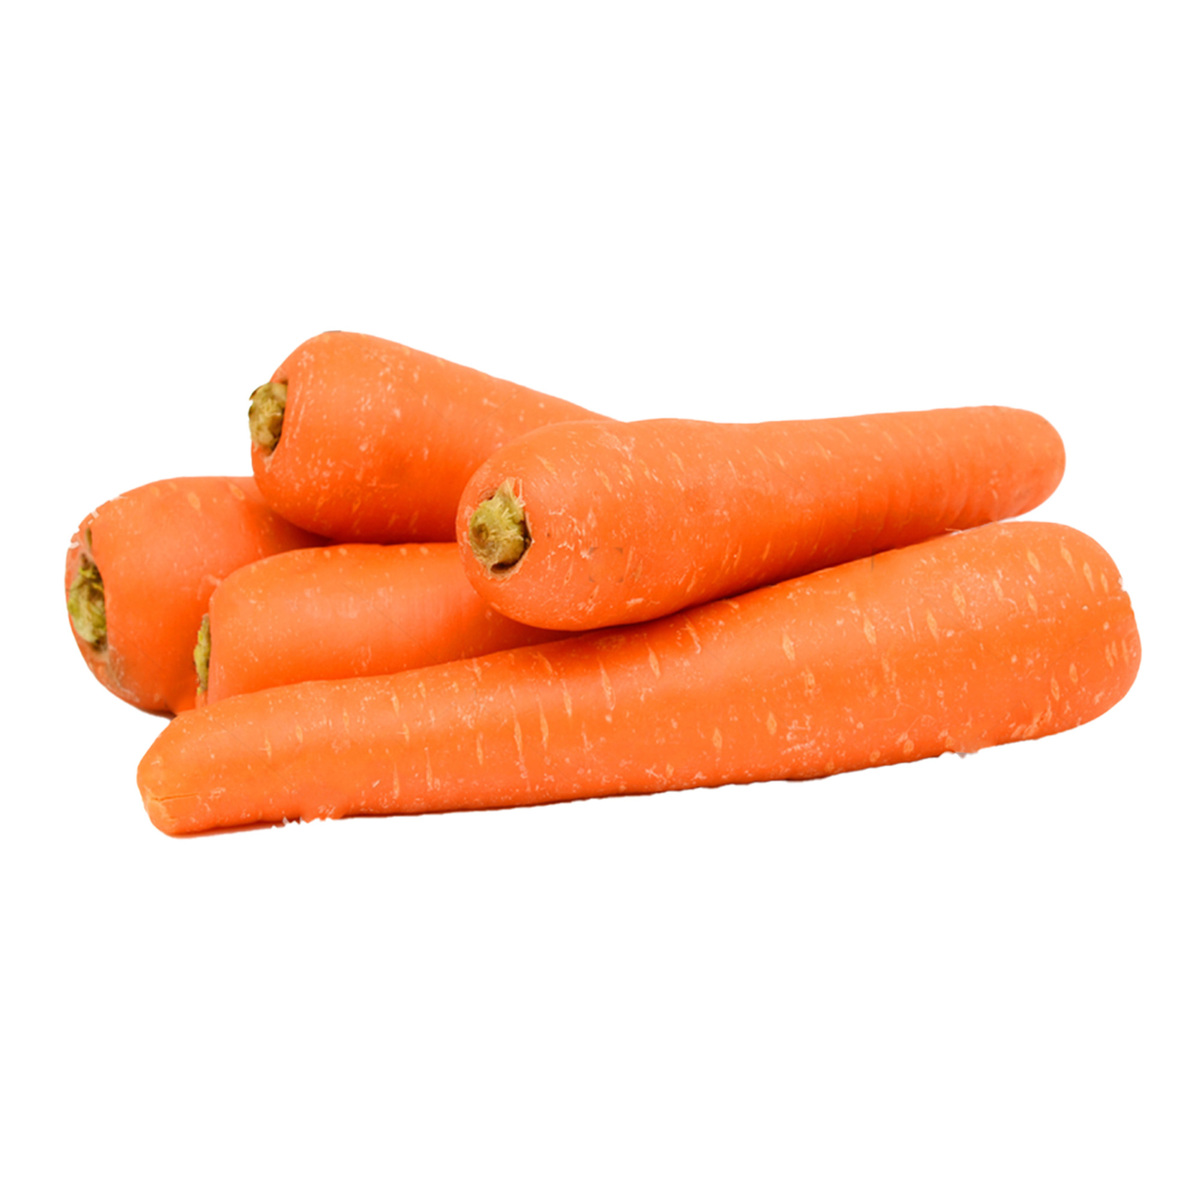 Fresh Carrots 1 kg